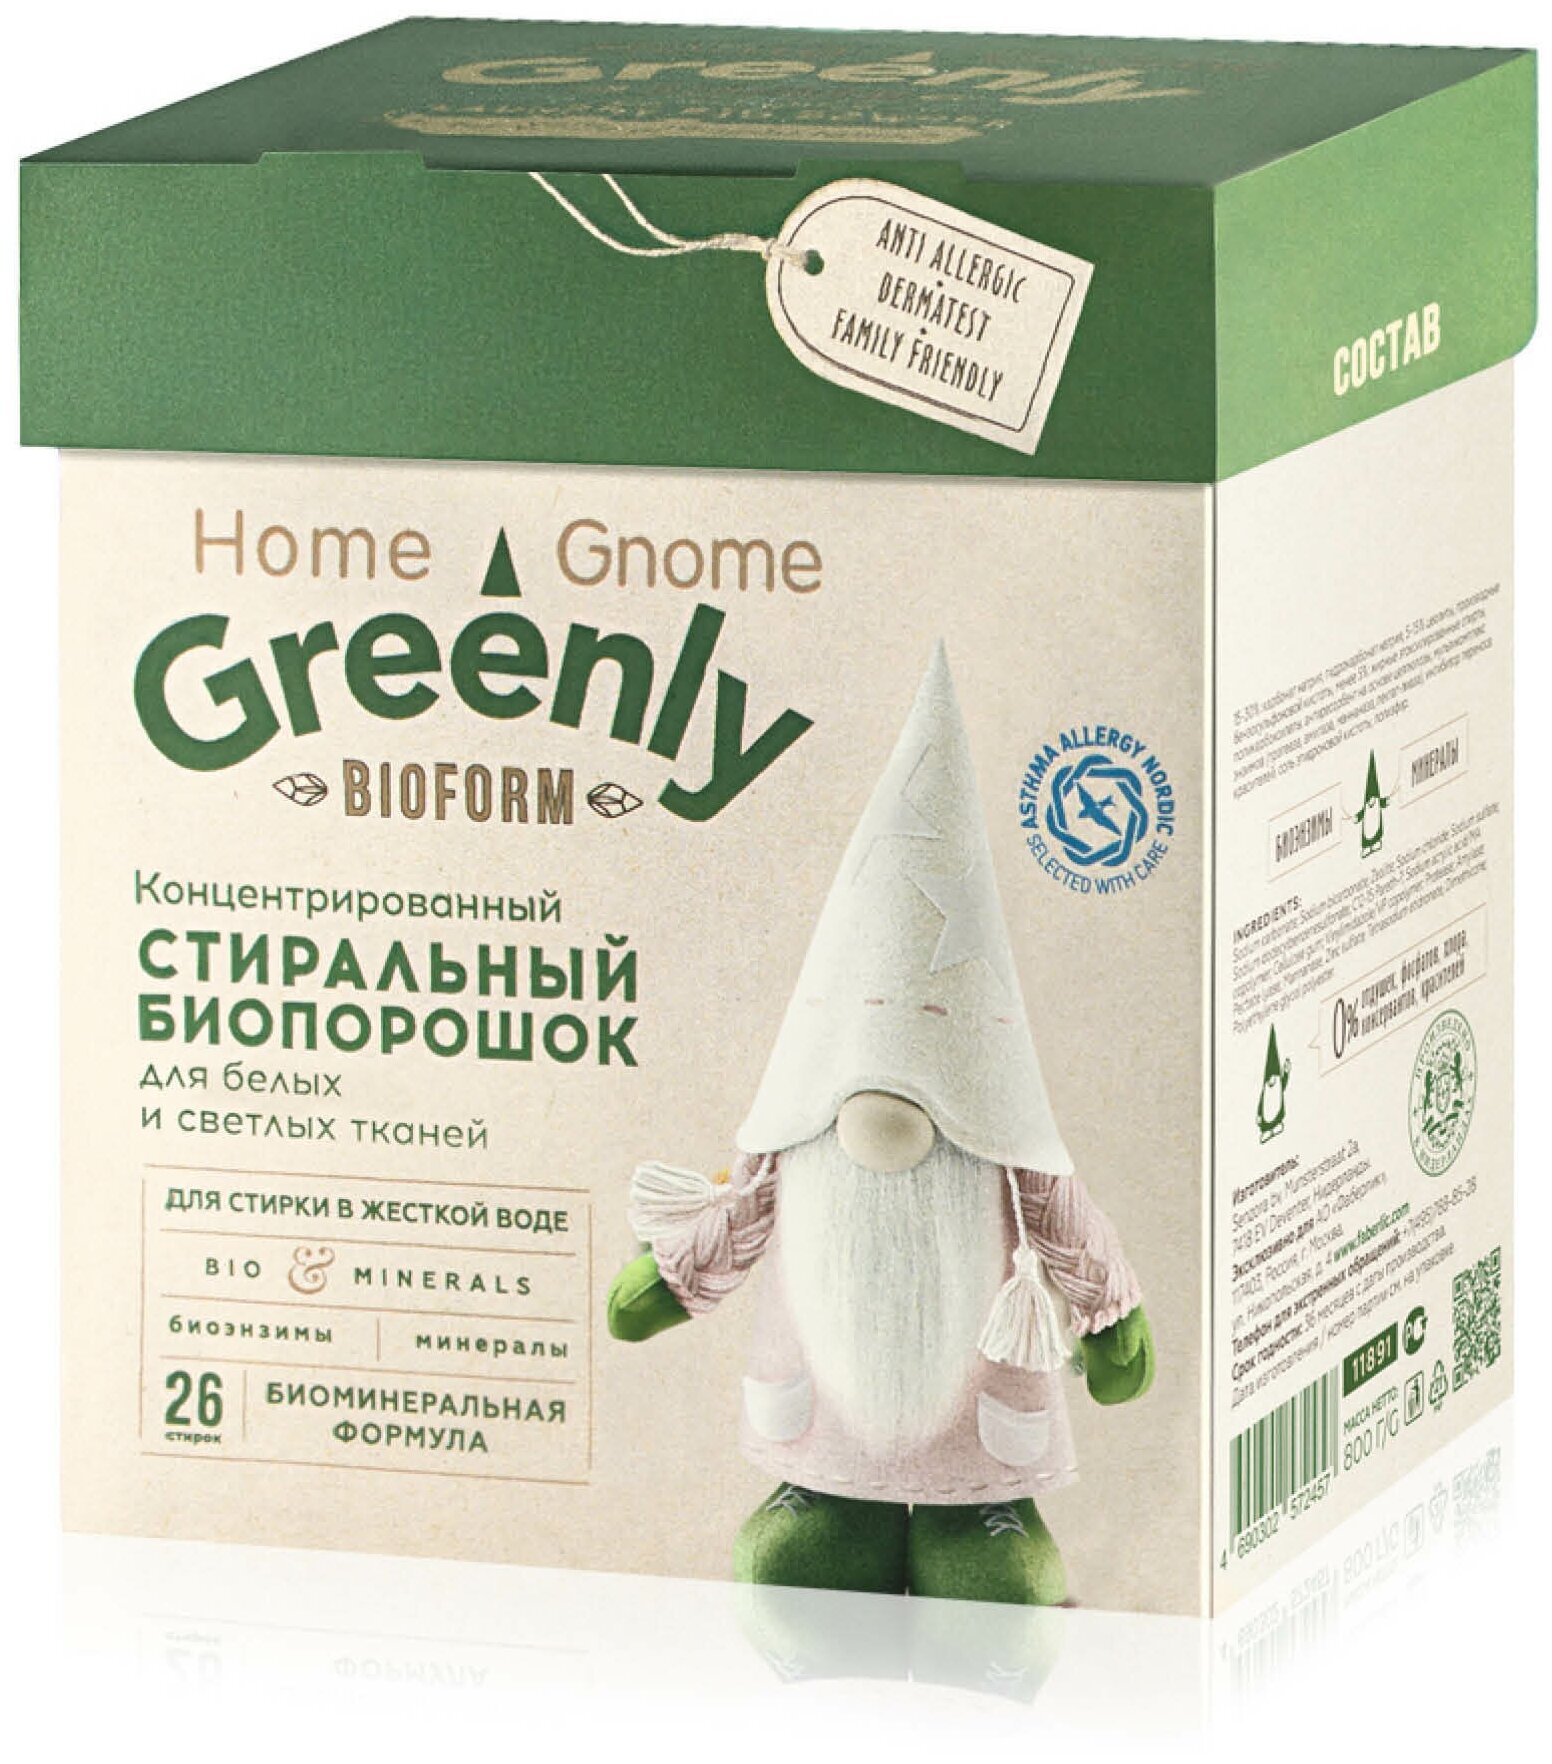 Faberlic Концентрированный стиральный биопорошок для белых и светлых тканей серии Home Gnome Greenly, 800 г, 26 стирок